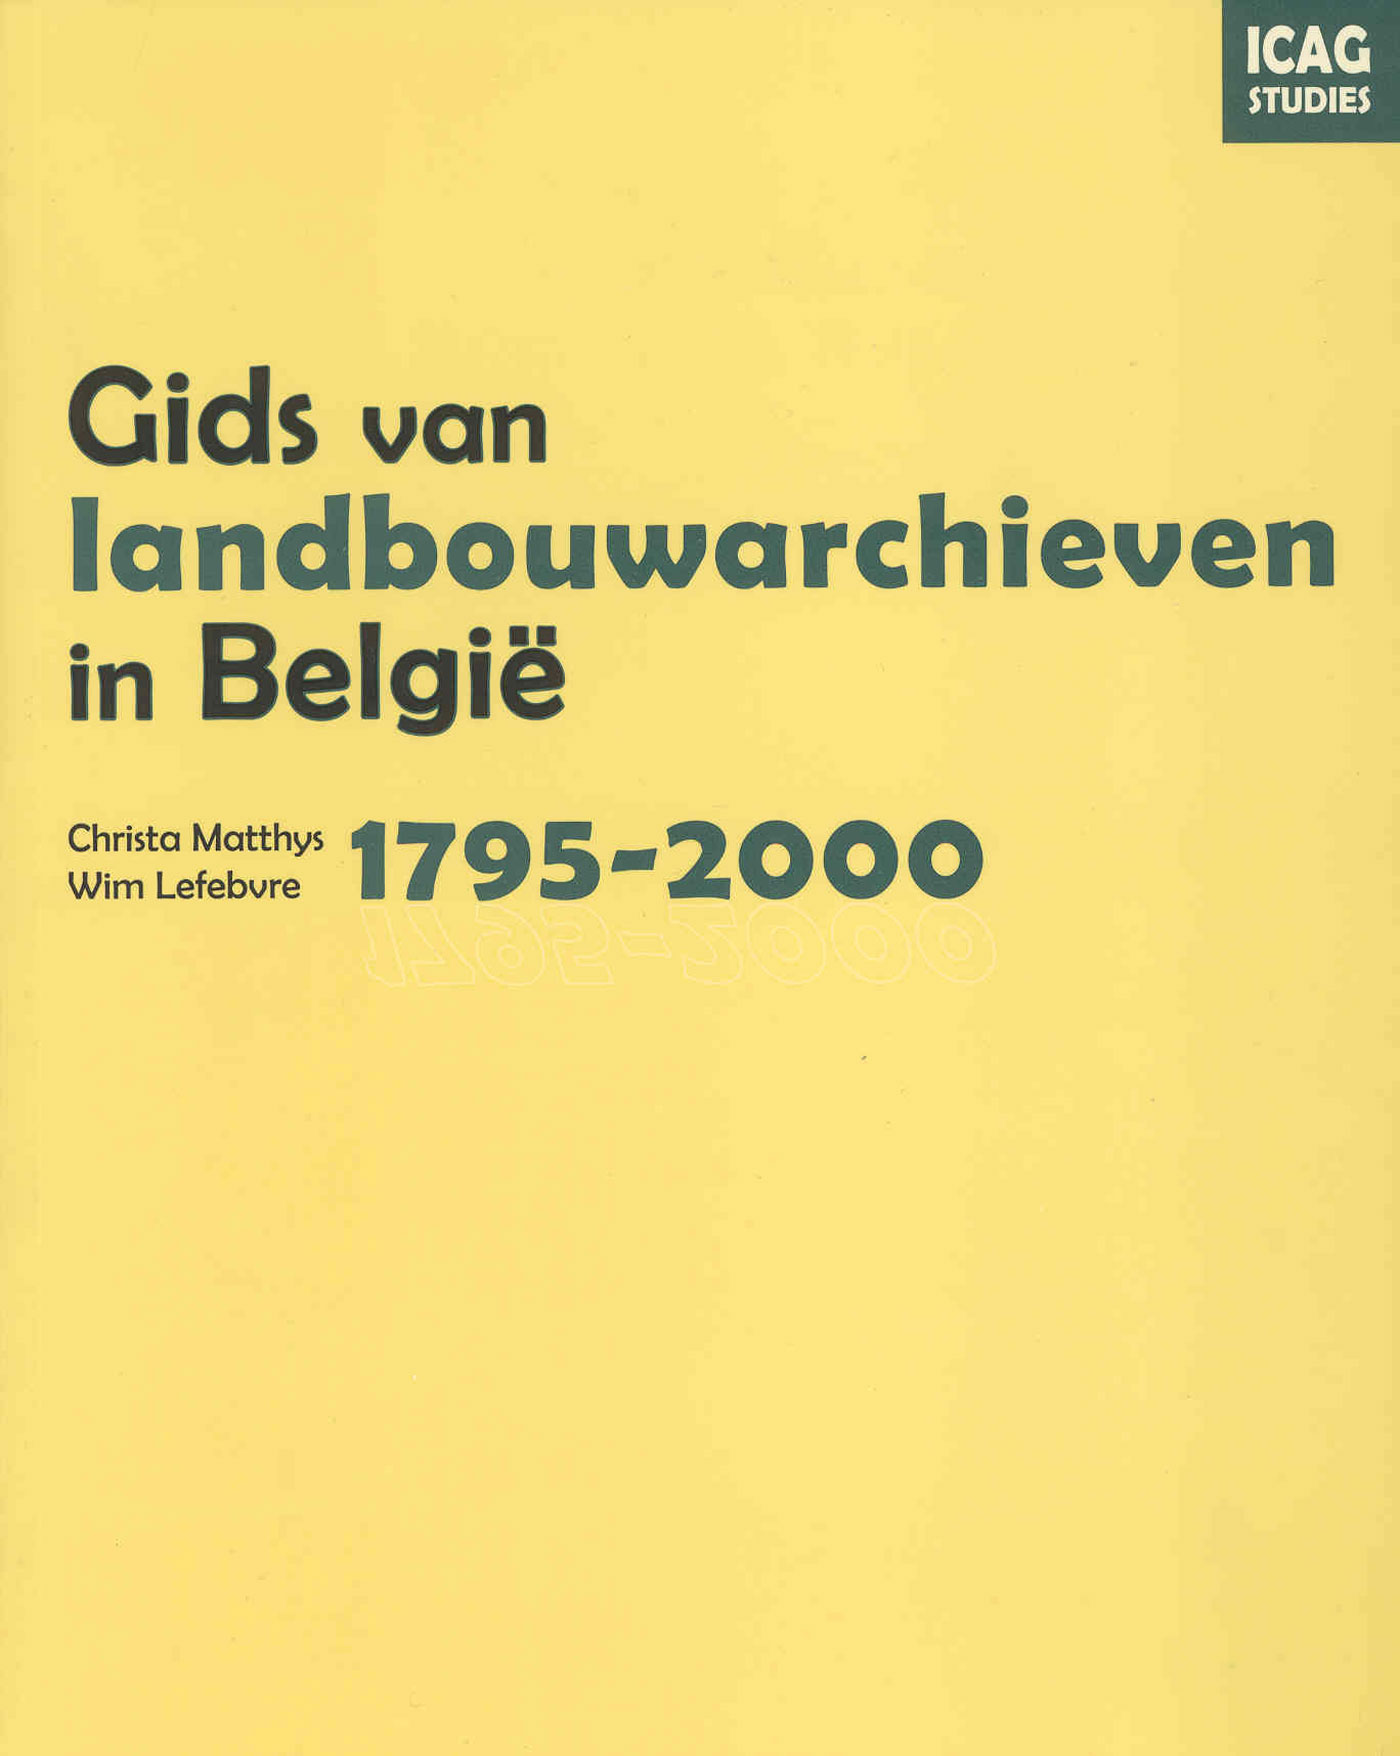 Gids van landbouwarchieven in Belgie, 1795-2000